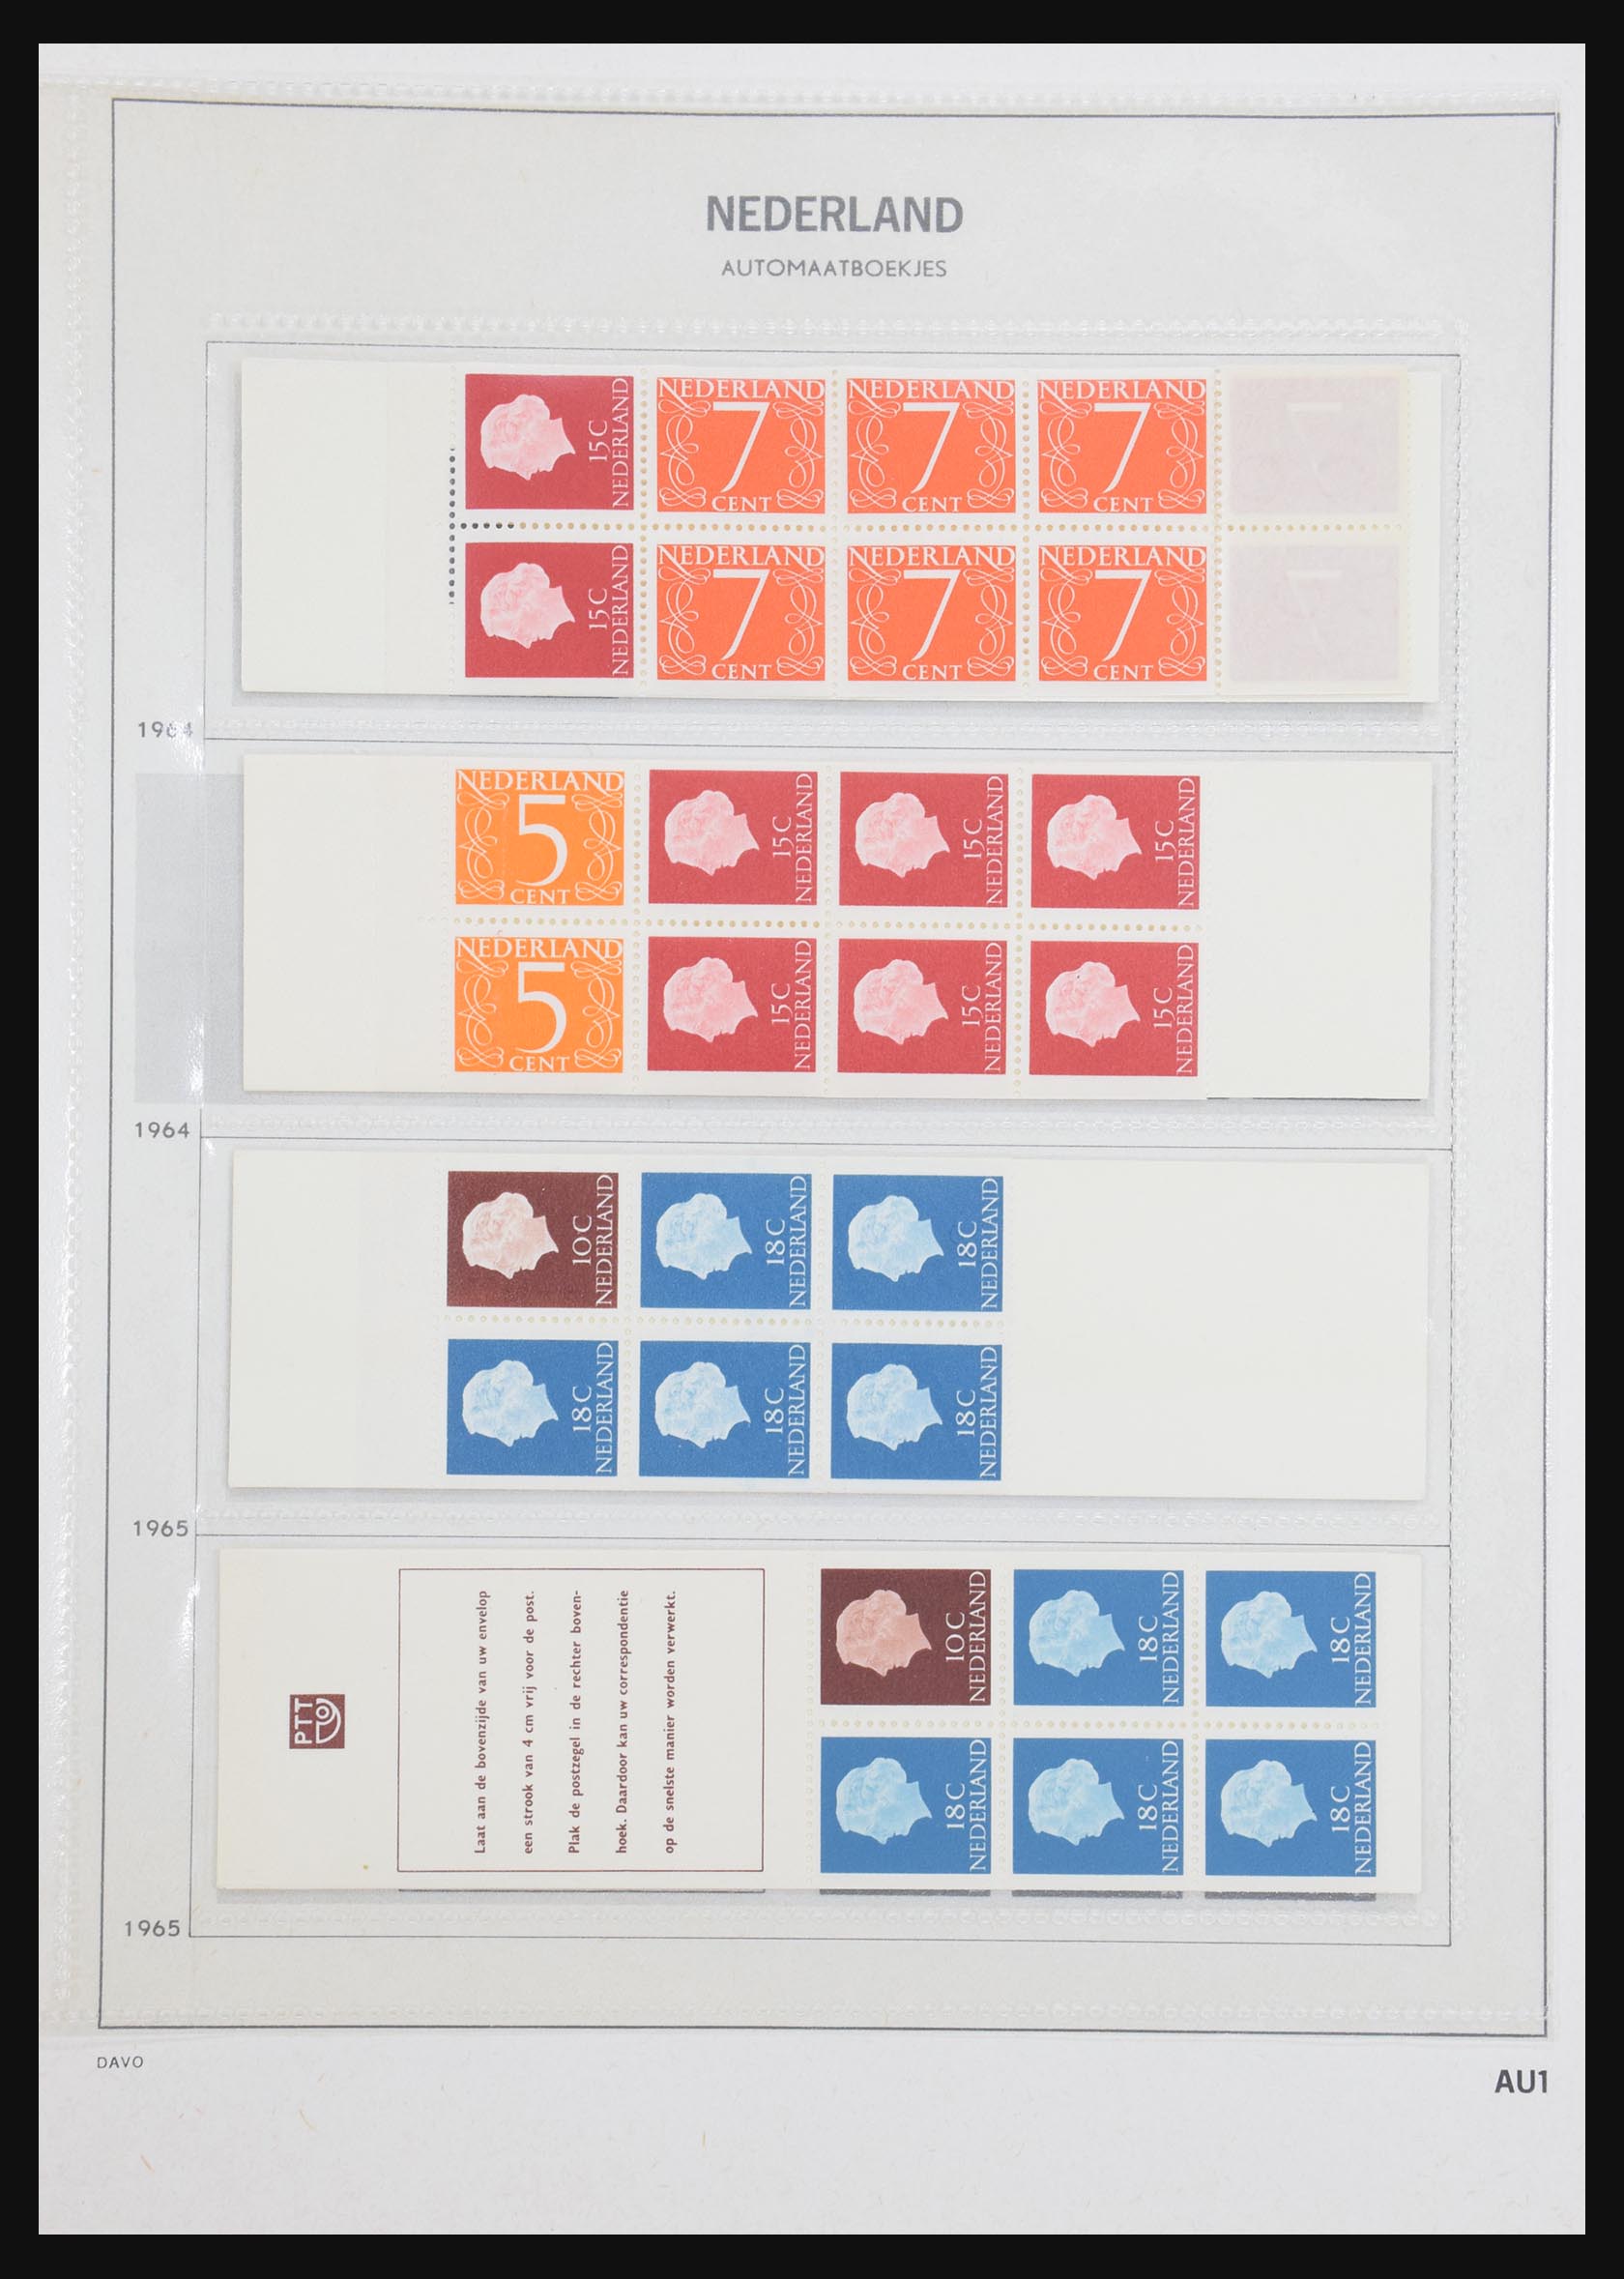 31159 001 - 31159 Netherlands stamp booklets 1964-1994.